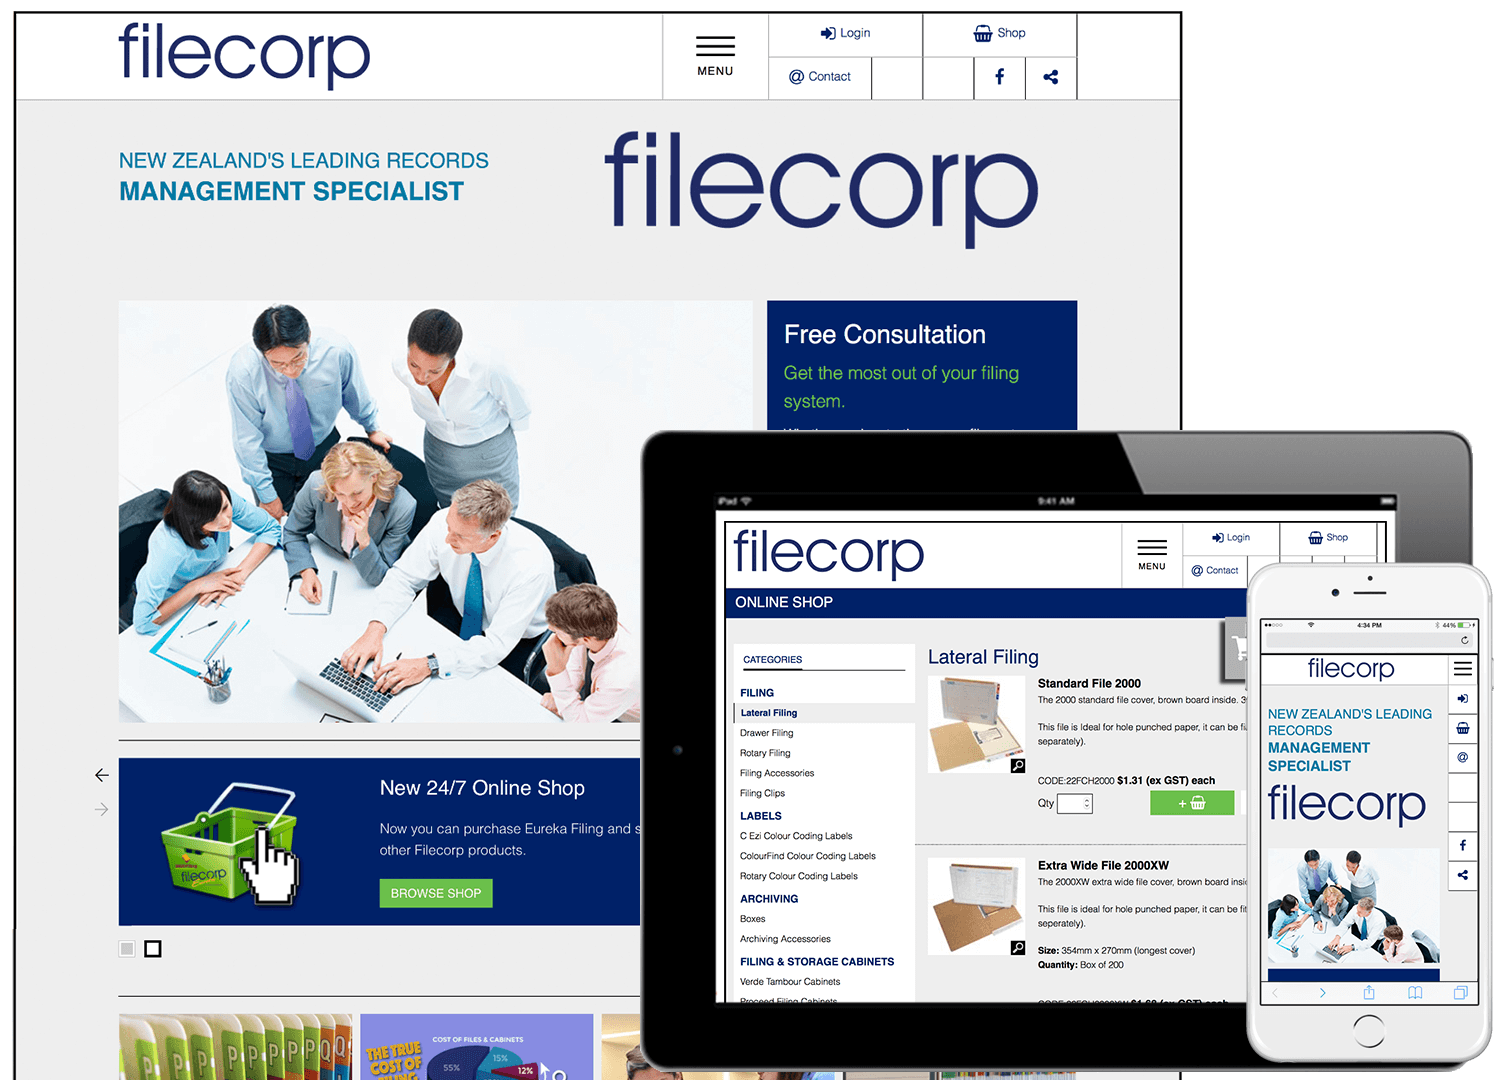 Filecorp